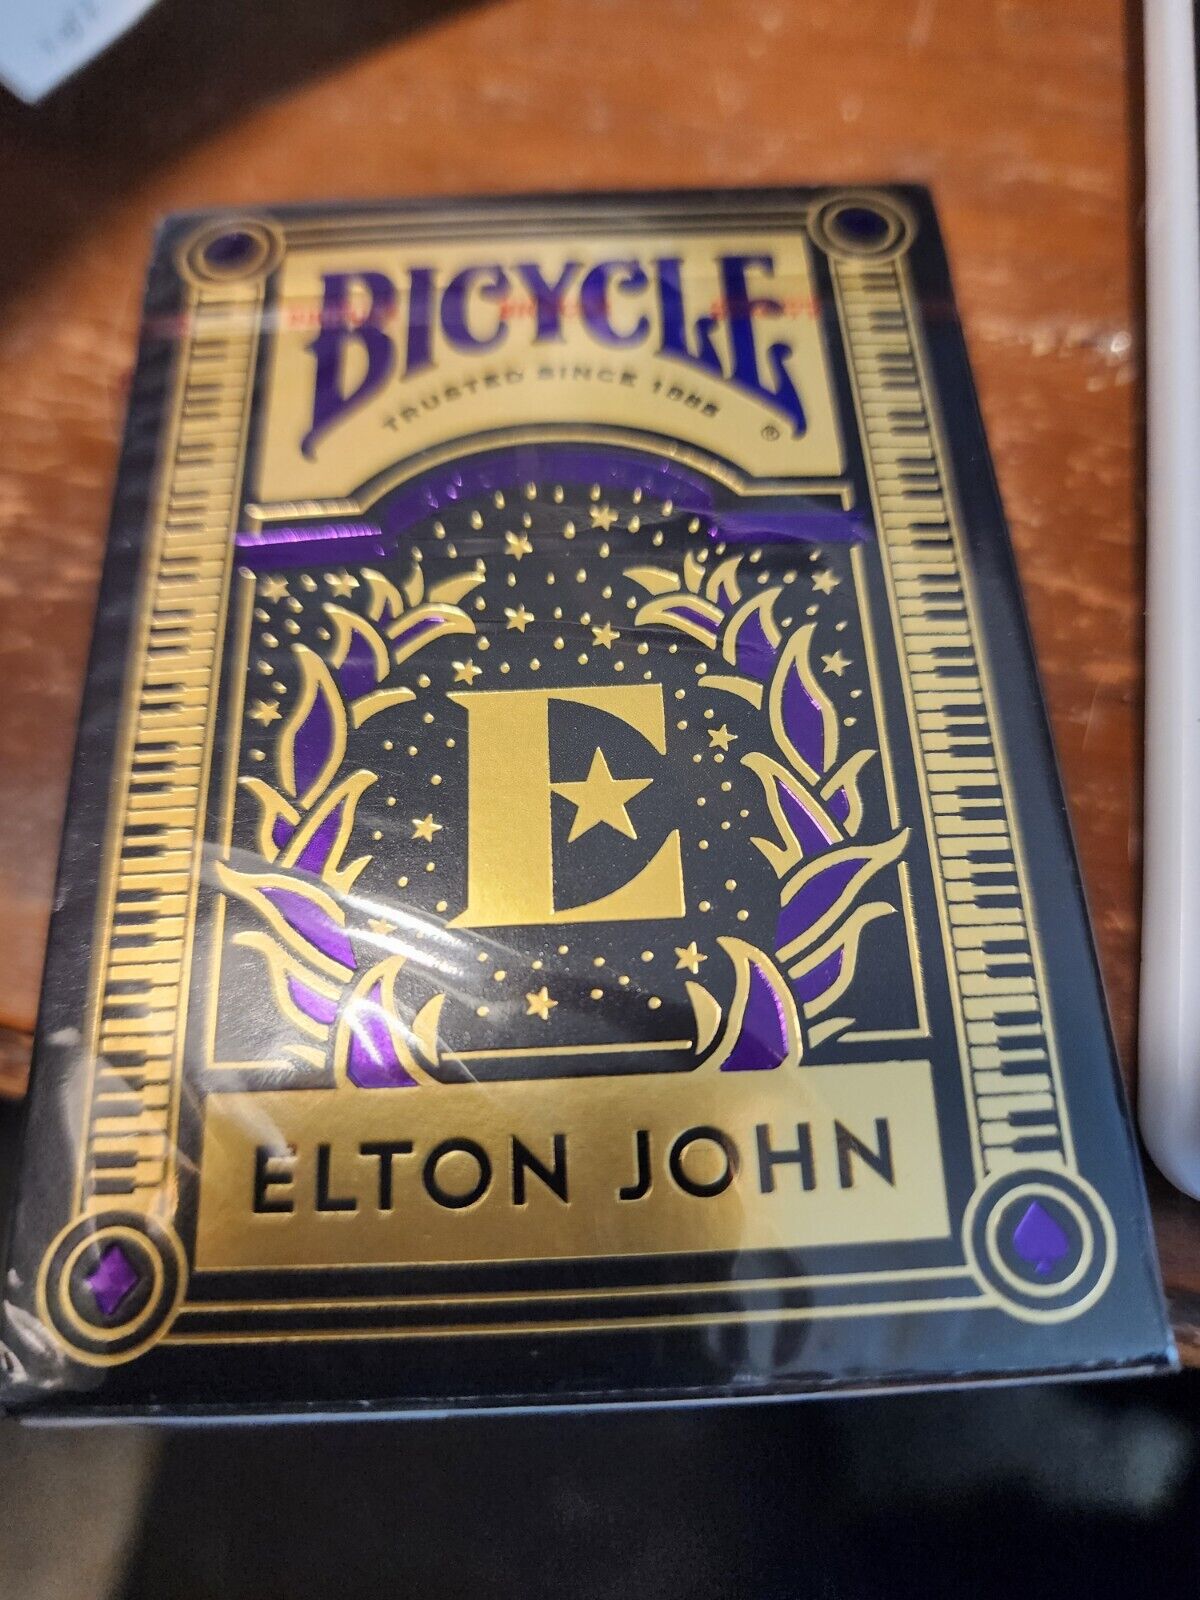 Bicycle Elton John Playing Cards